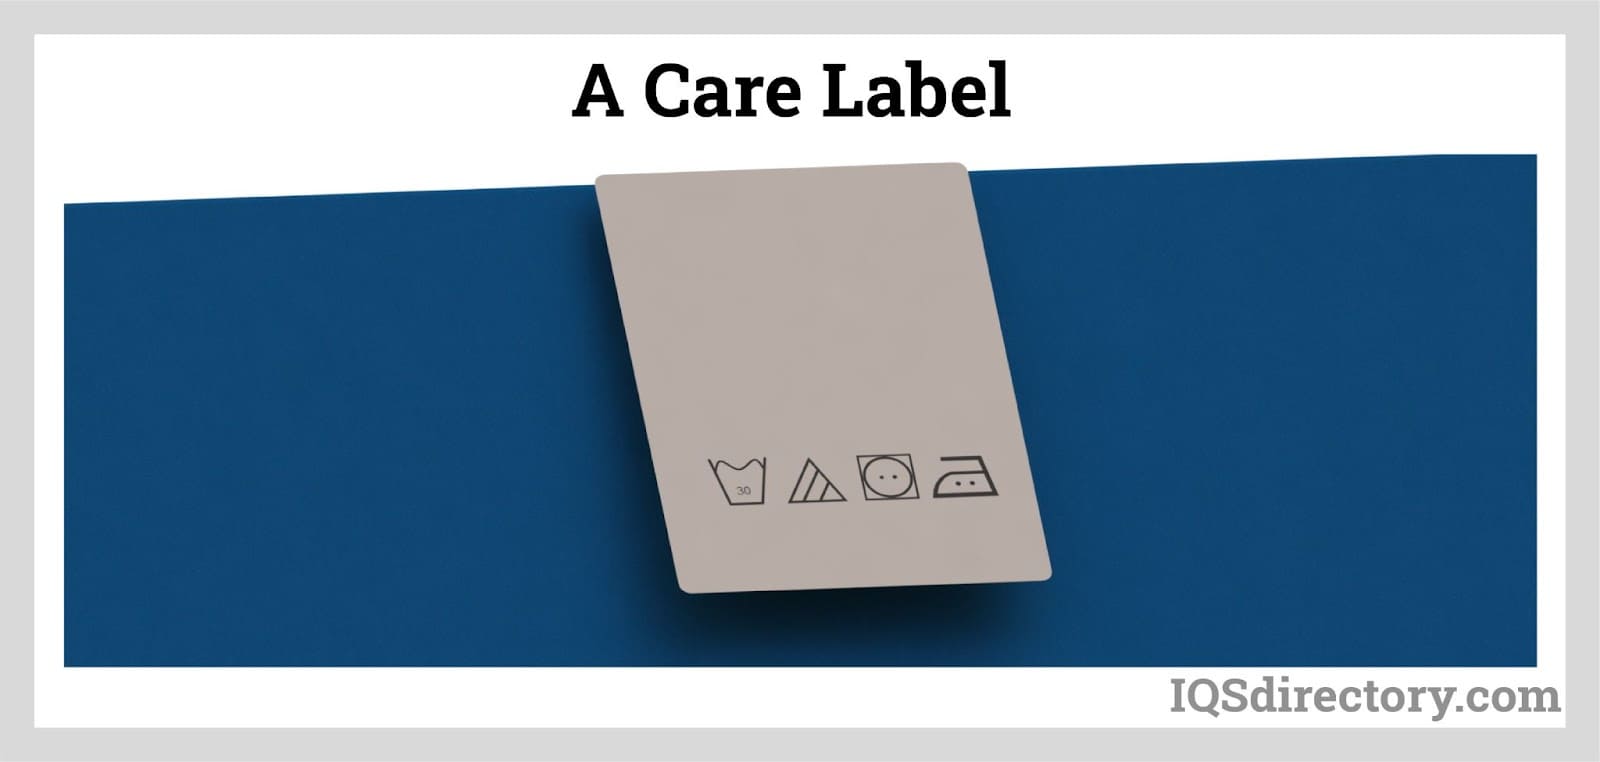 A Care Label